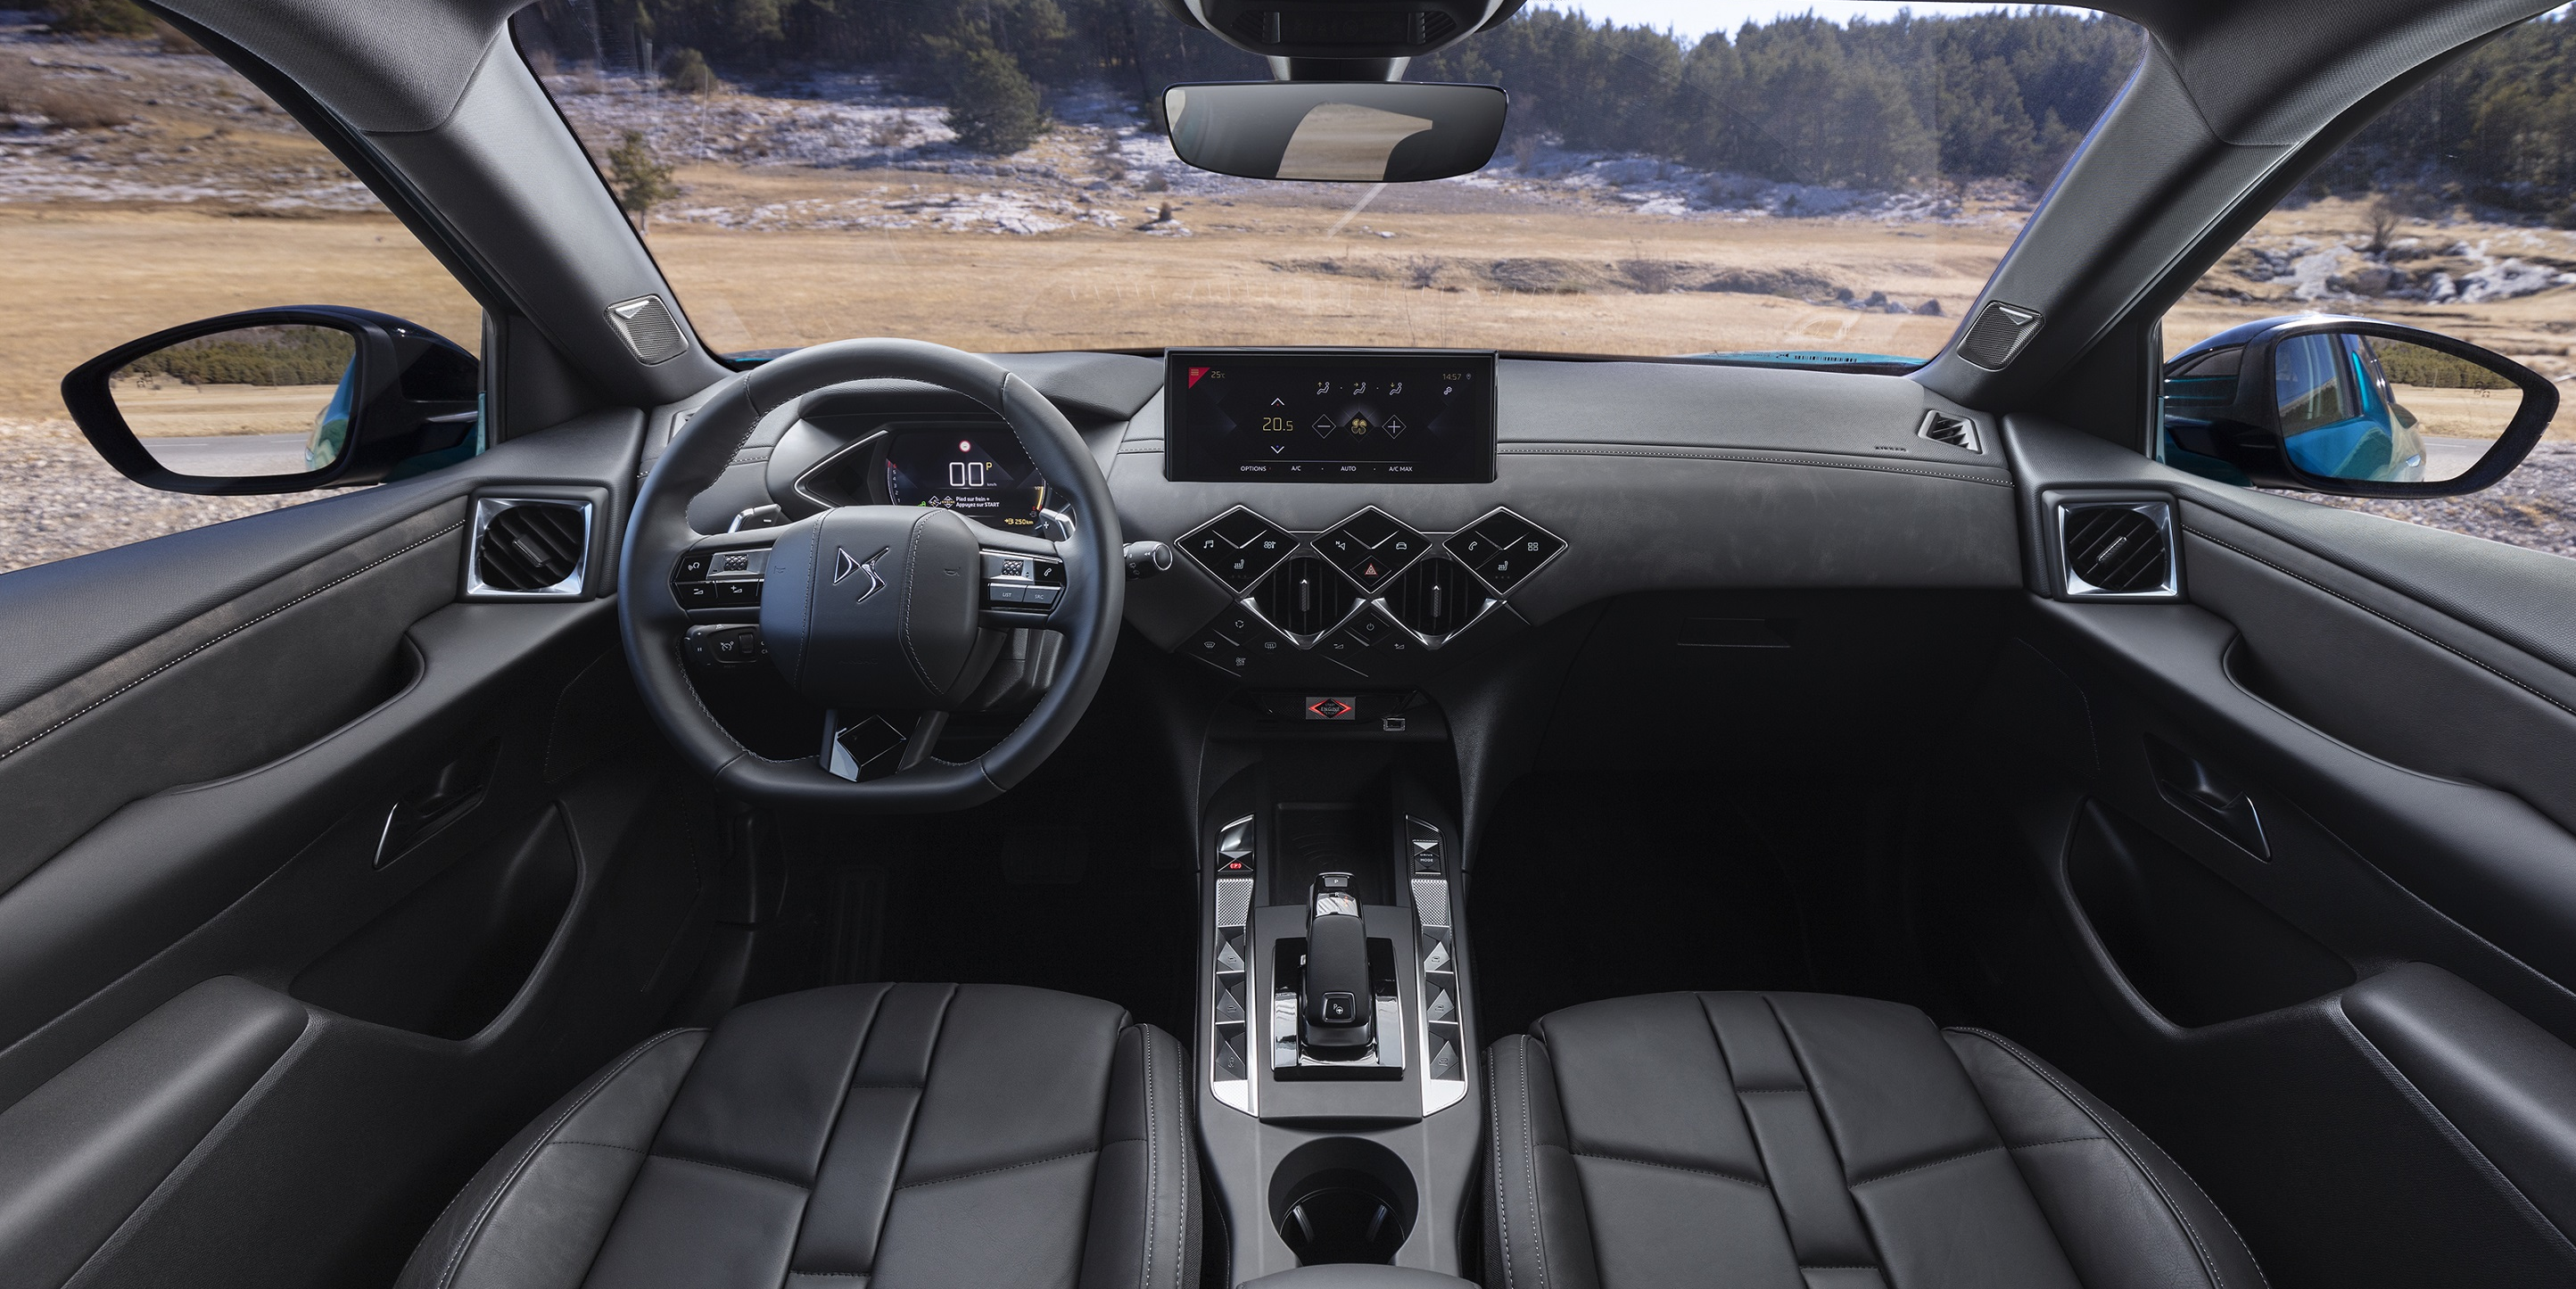 Les airbags défectueux de 19.000 C3 et DS3 ont été changés en France, affirme Citroën